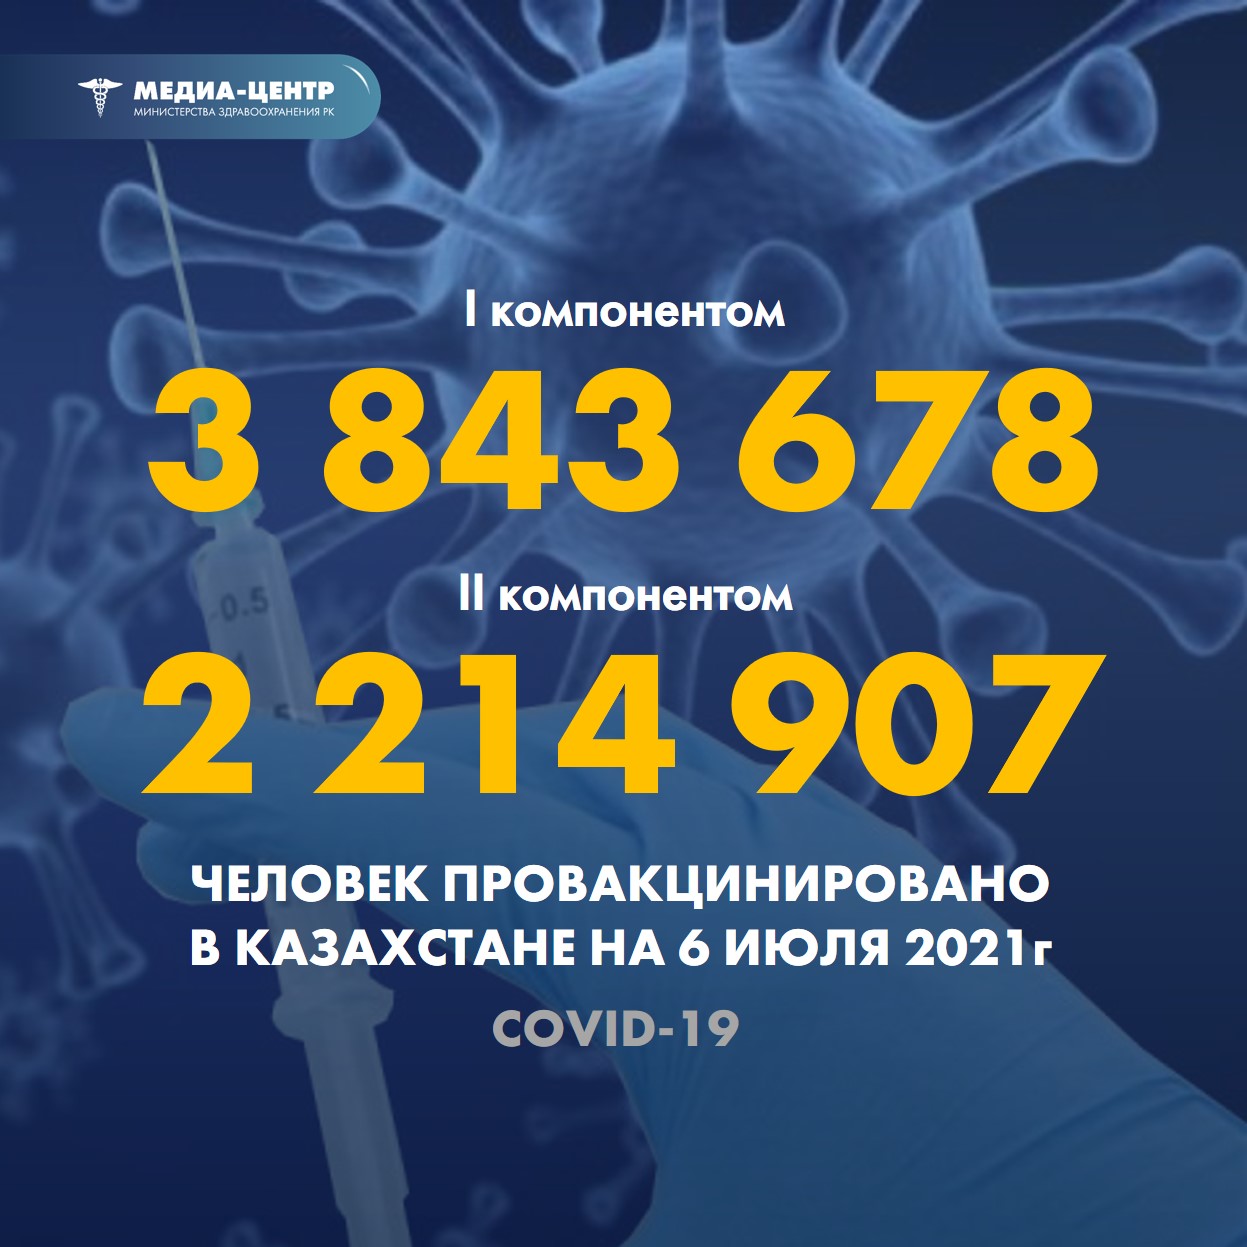 Информация о проведении вакцинации населения против КВИ на 6.07.2021 г. в разрезе регионов